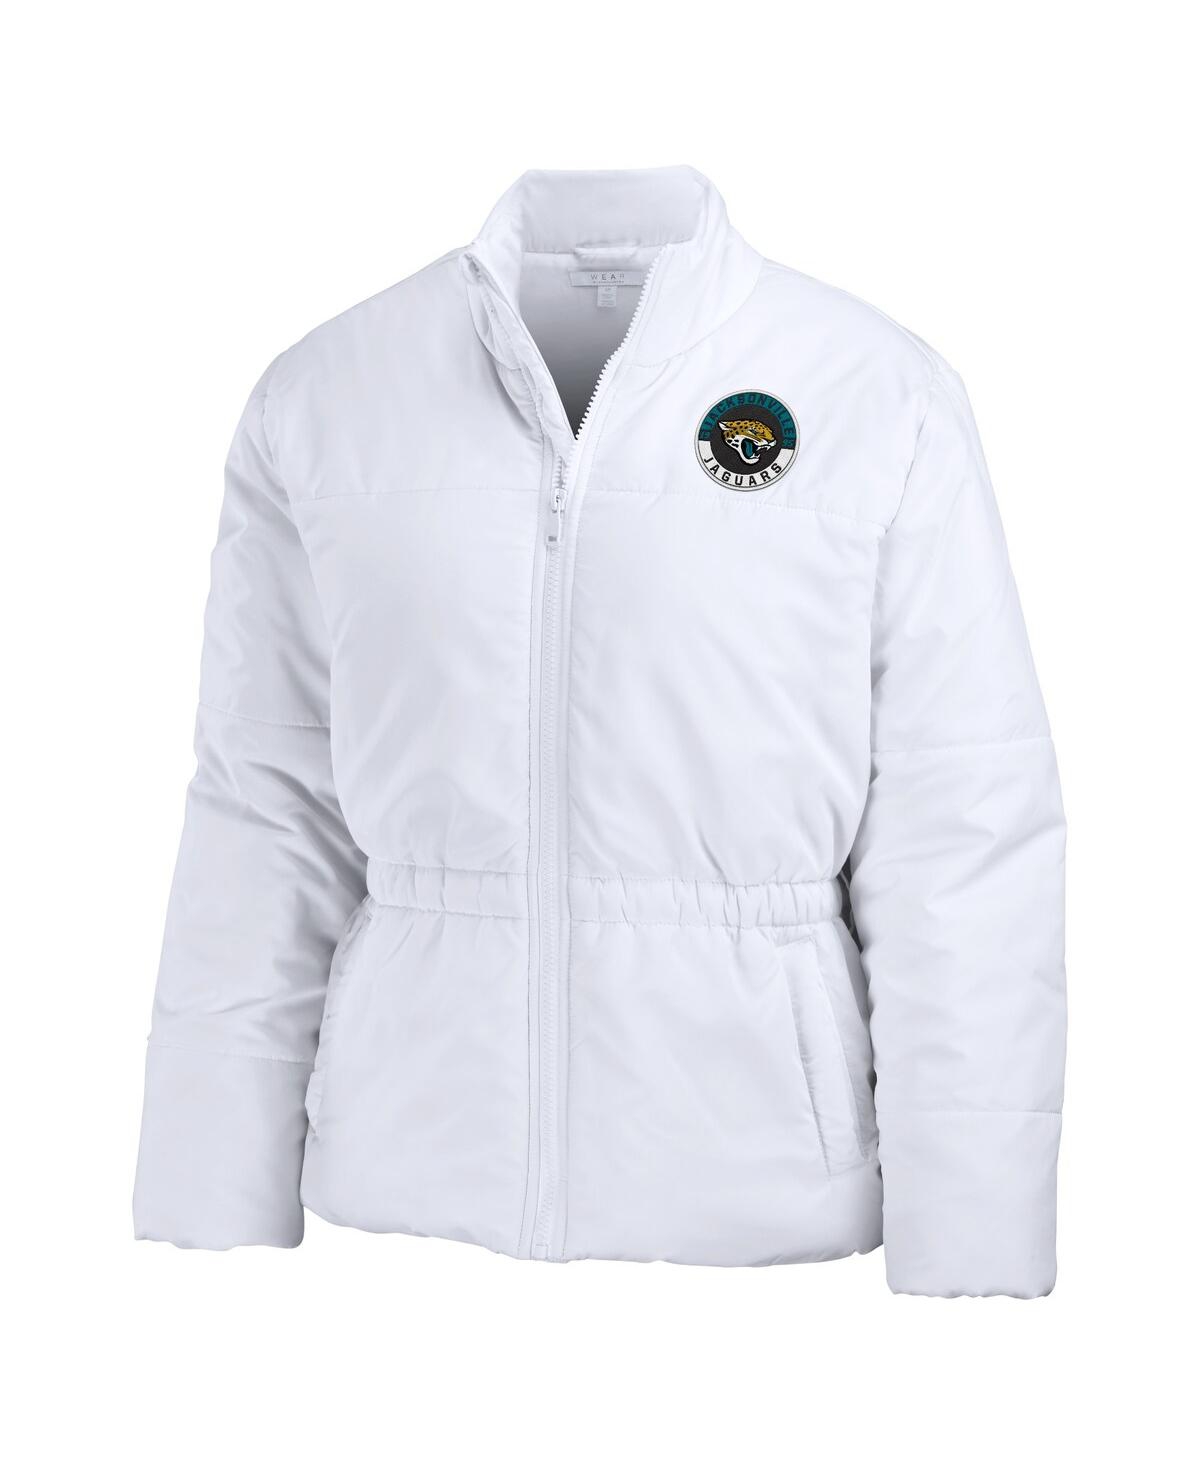 Shop Wear By Erin Andrews Women's  White Jacksonville Jaguars Packaway Full-zip Puffer Jacket